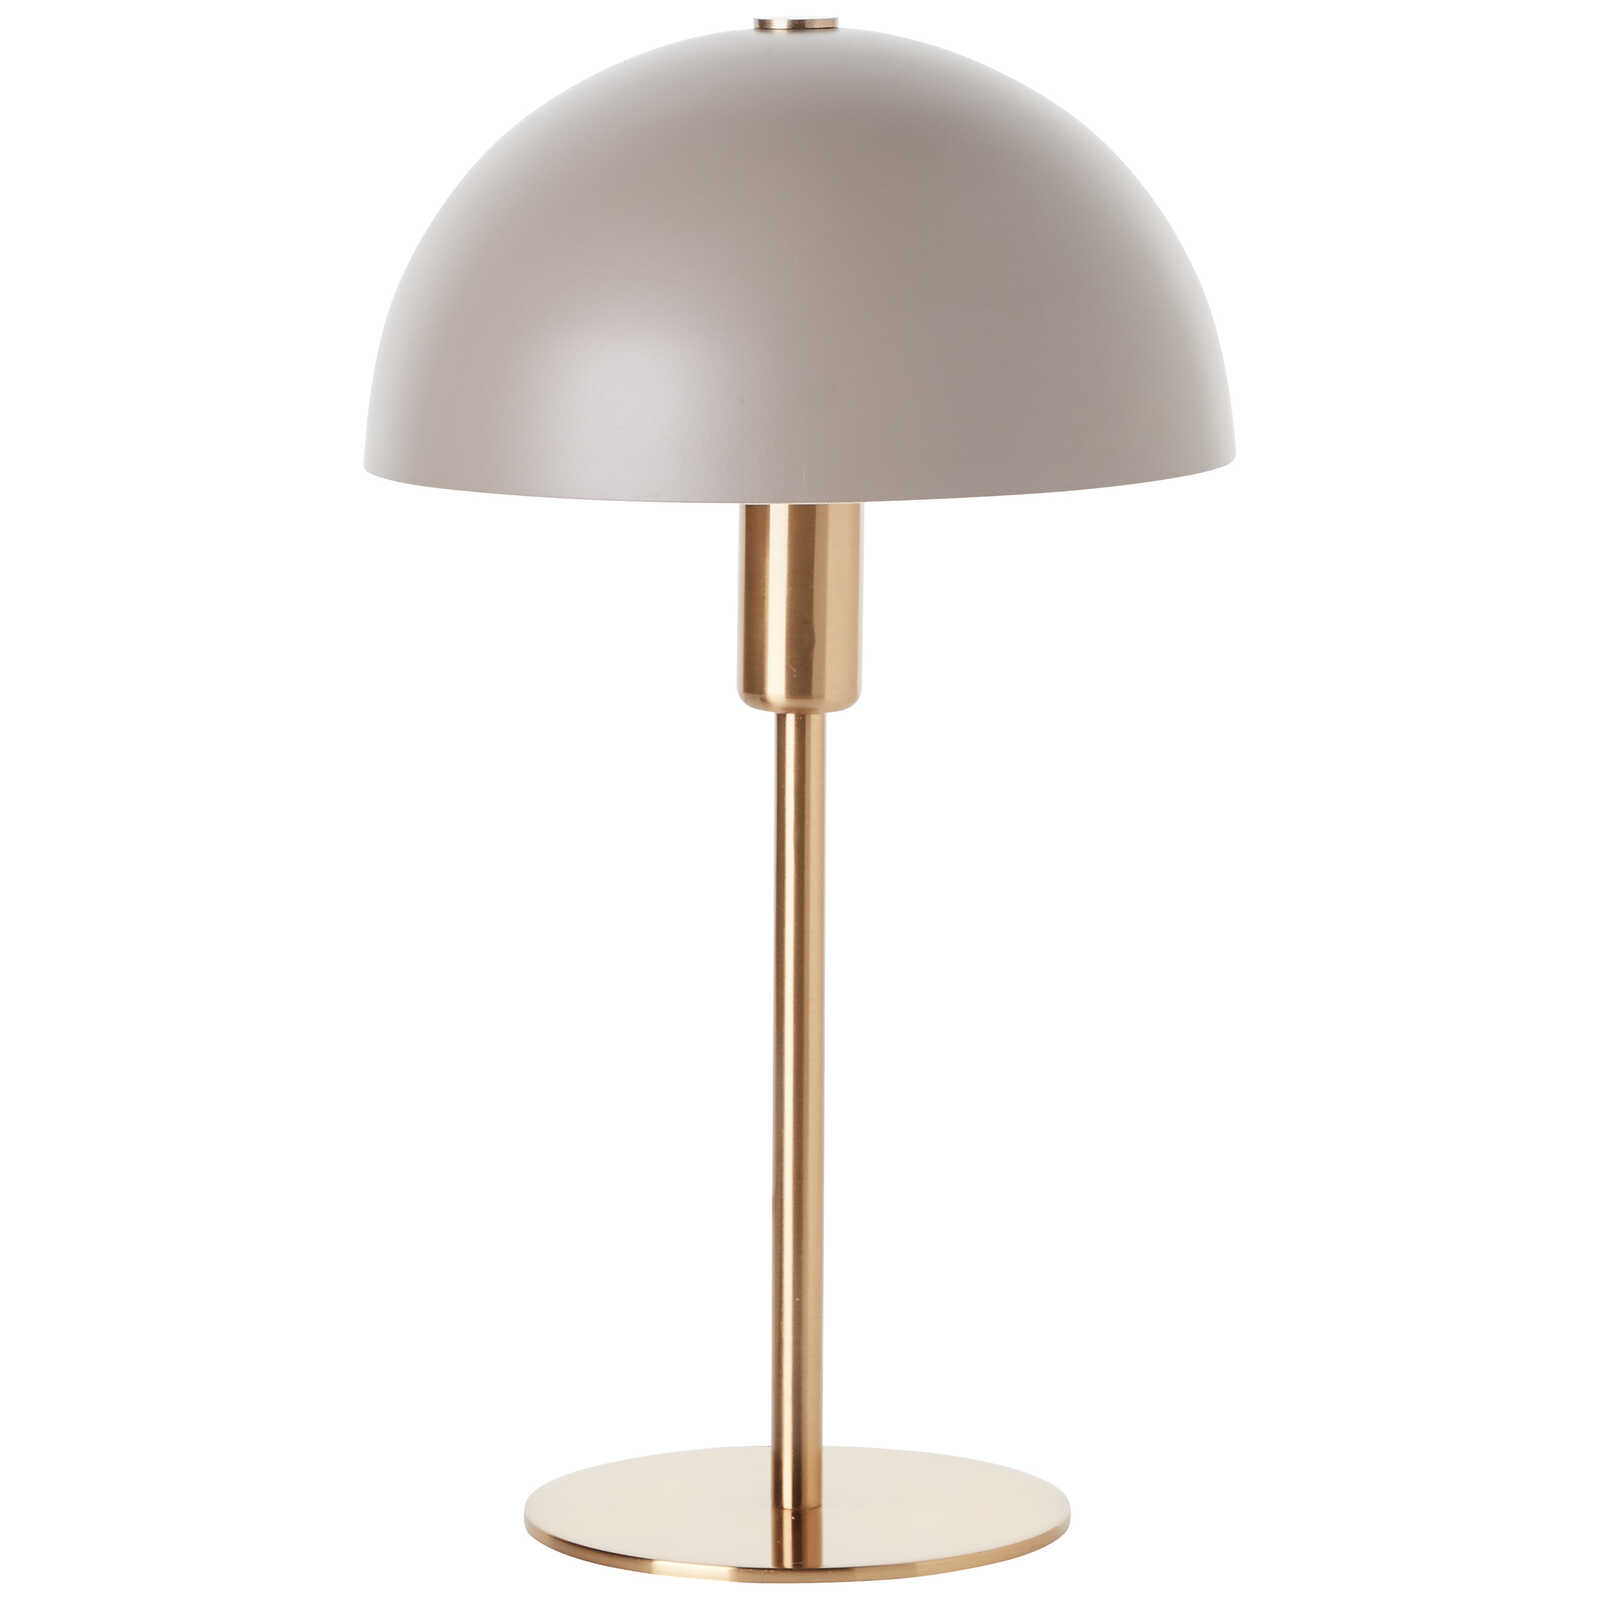             Metalen tafellamp - Lasse 1 - Goud
        